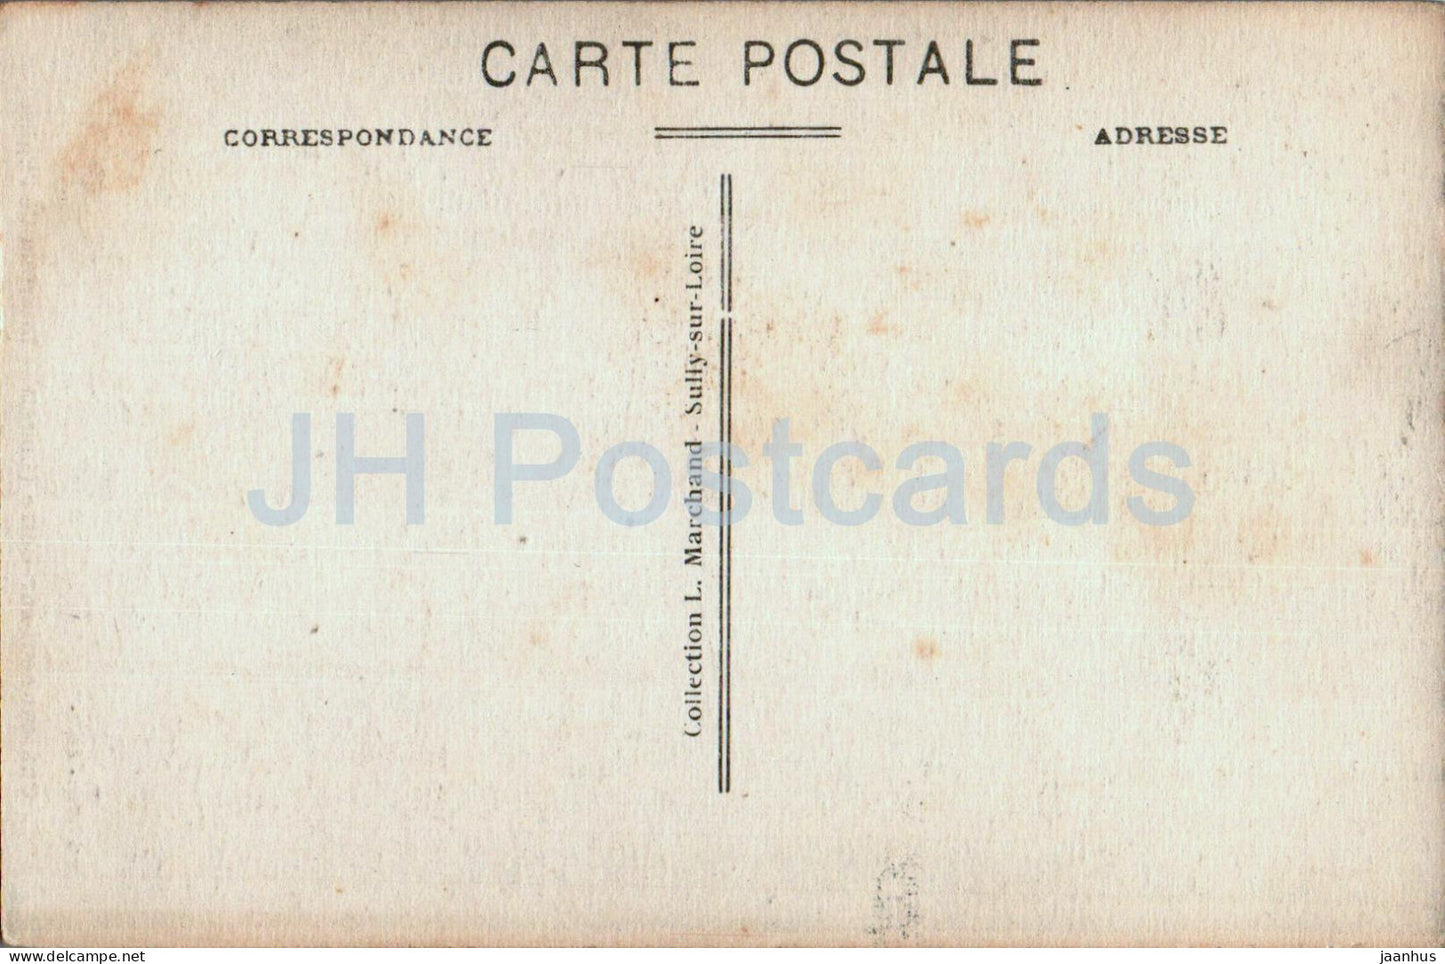 Chateauneuf sur Loire - Interieur de l'Eglise - church - old postcard - 1913 - France - unused